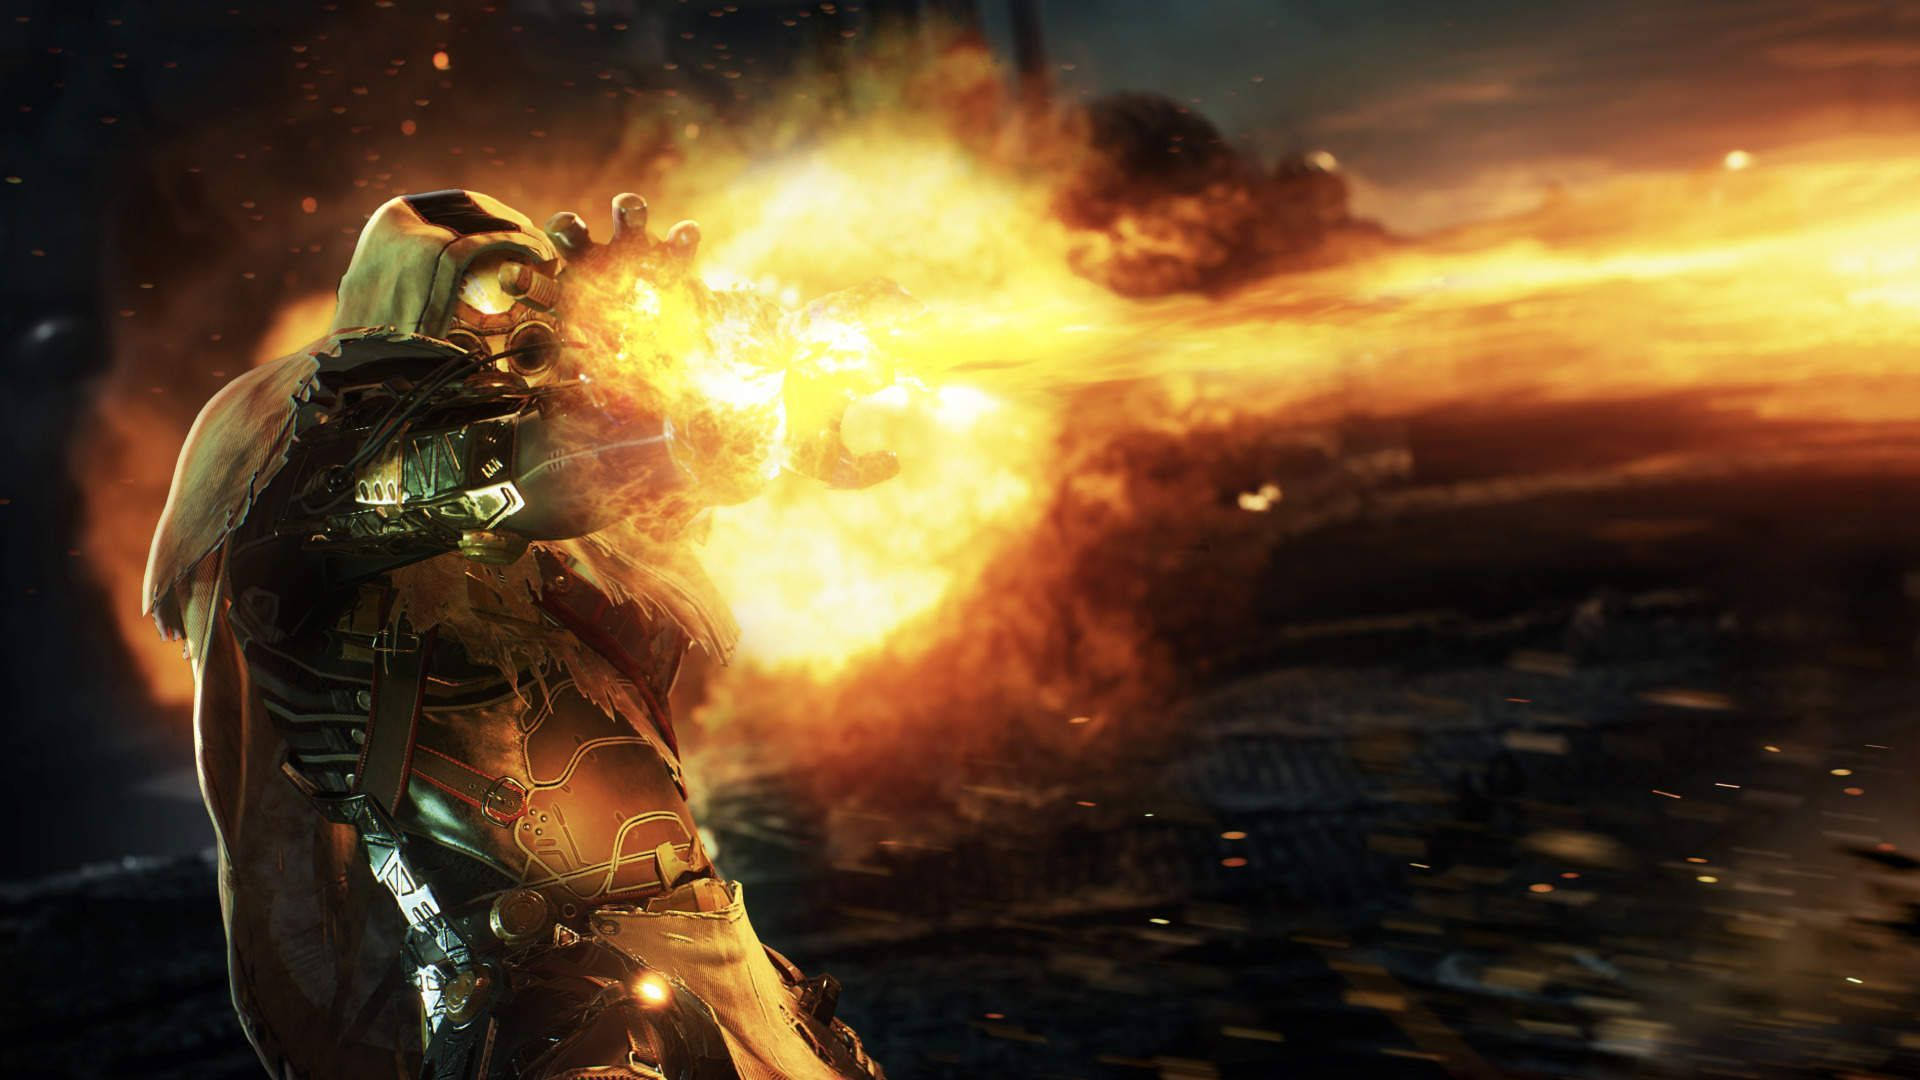 An Outrider Pyromancer unleashing a powerful fire blast. Wallpaper